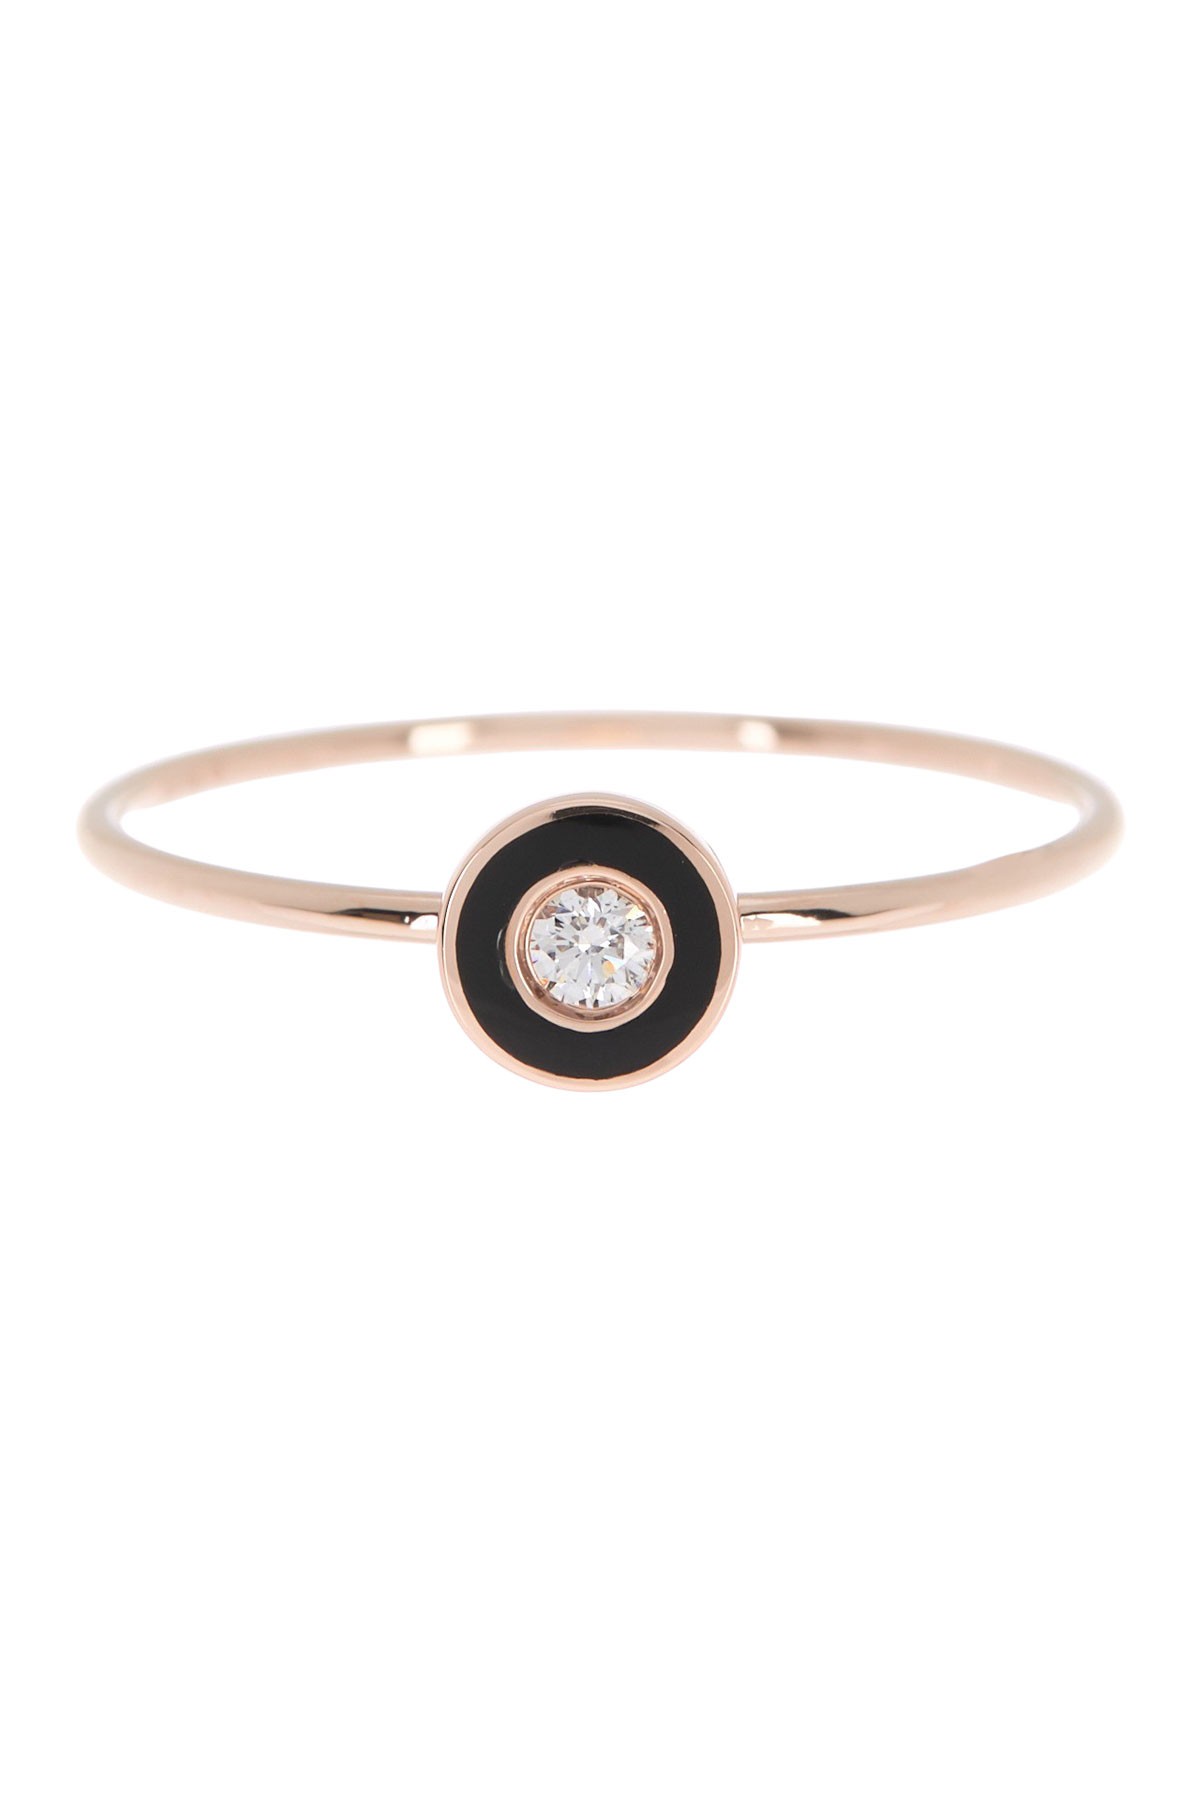 14K Rose Gold Bezel Ring - Size 6 EF Collection